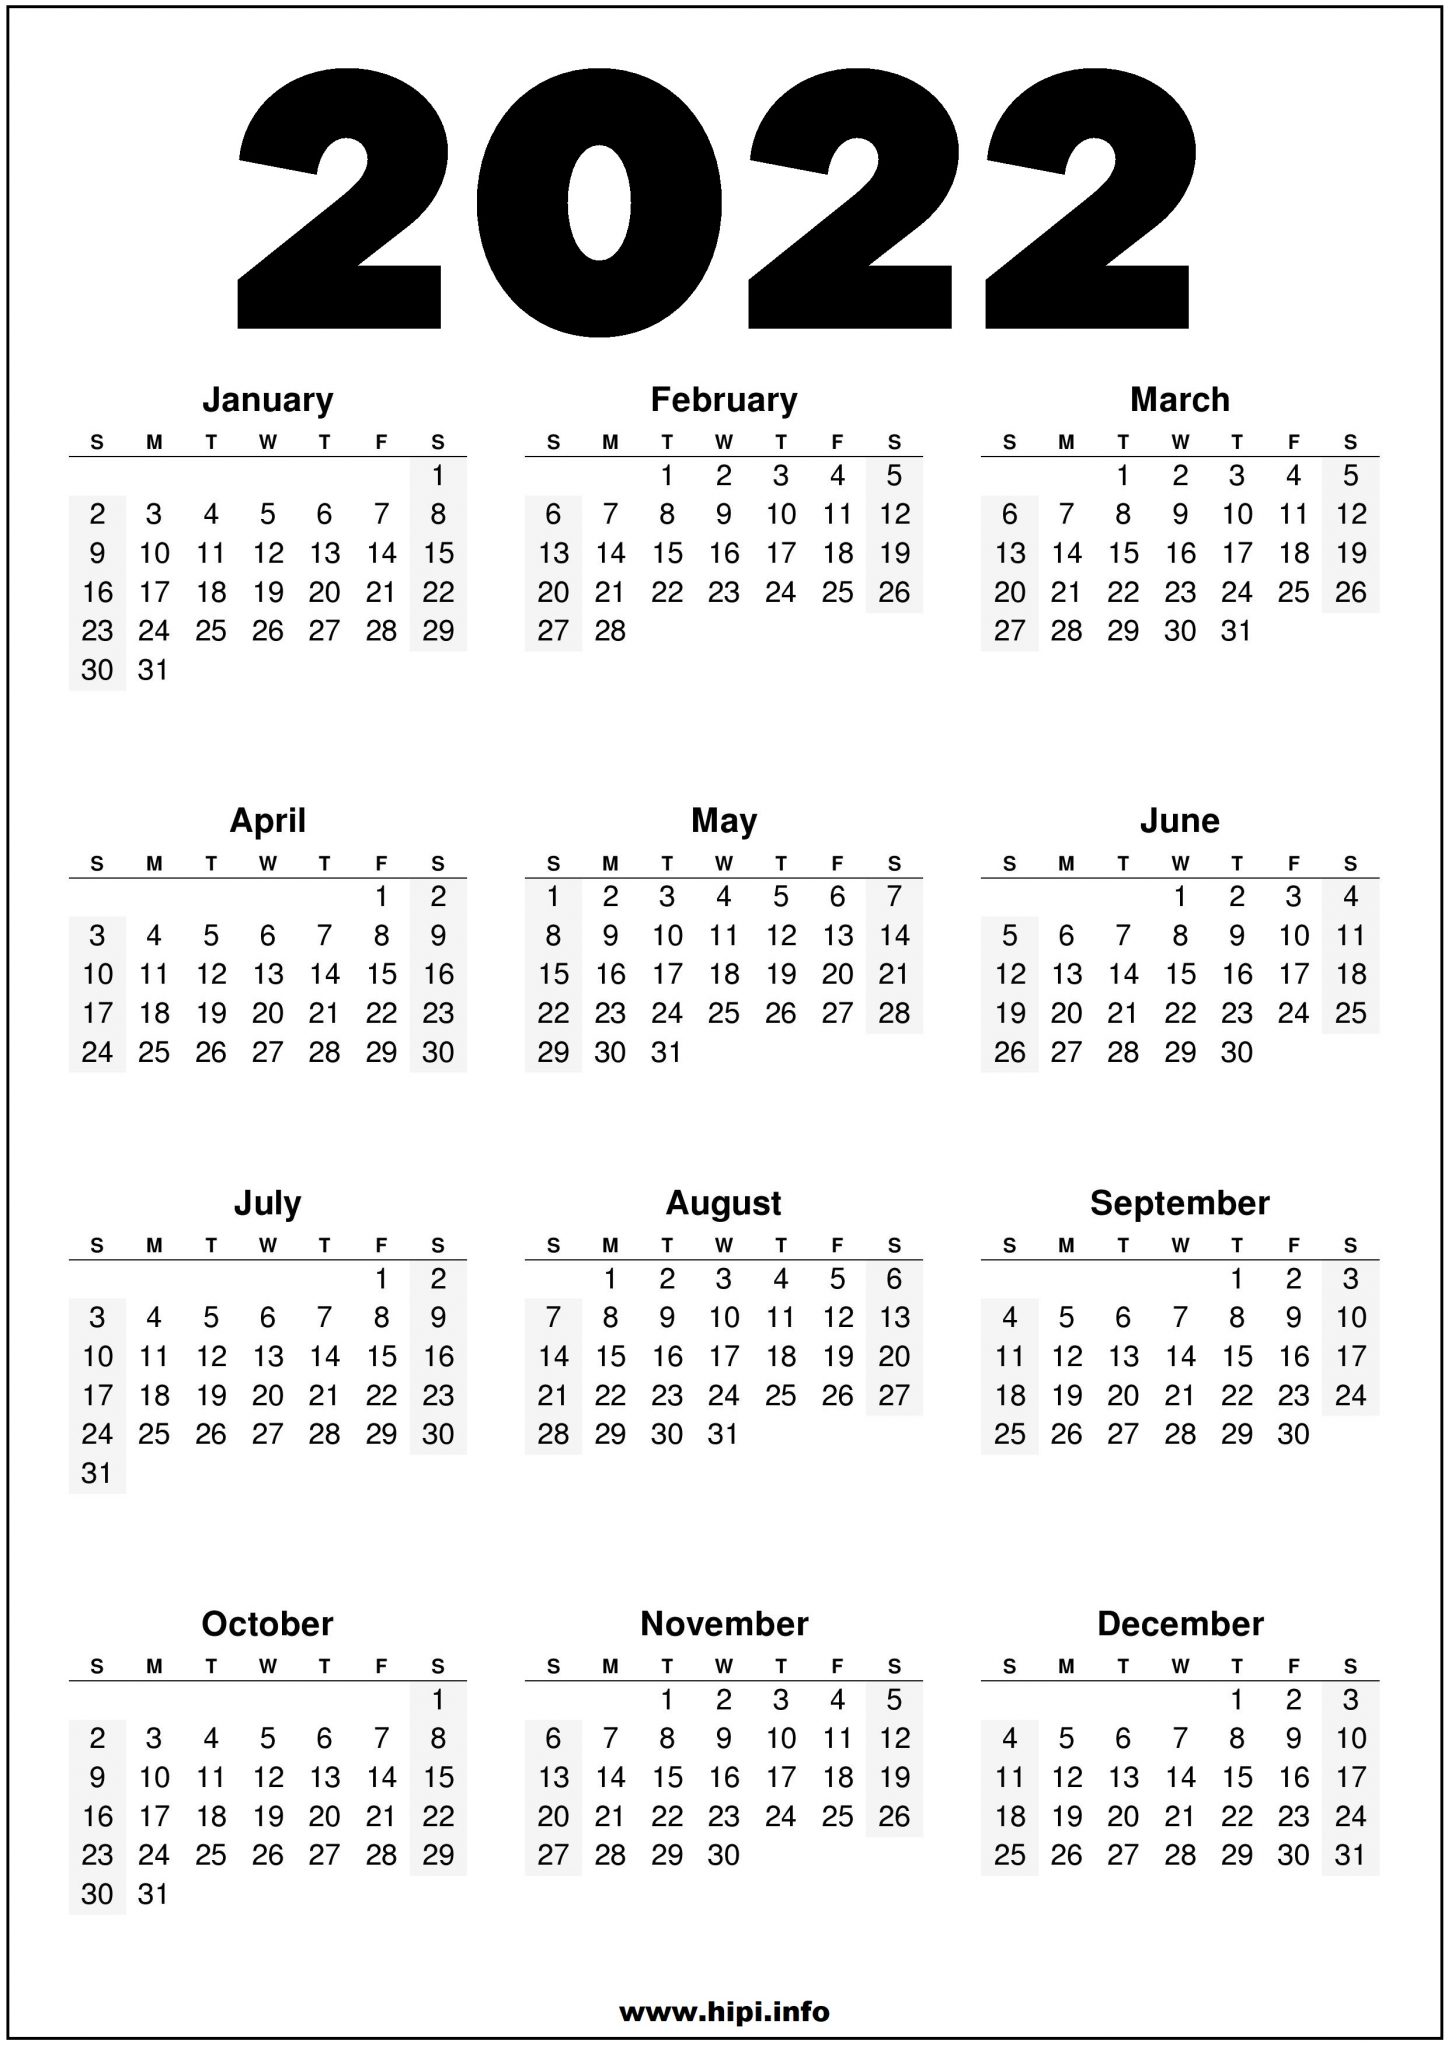 2022 Printable US Calendar Black and White Hipi.info Calendars